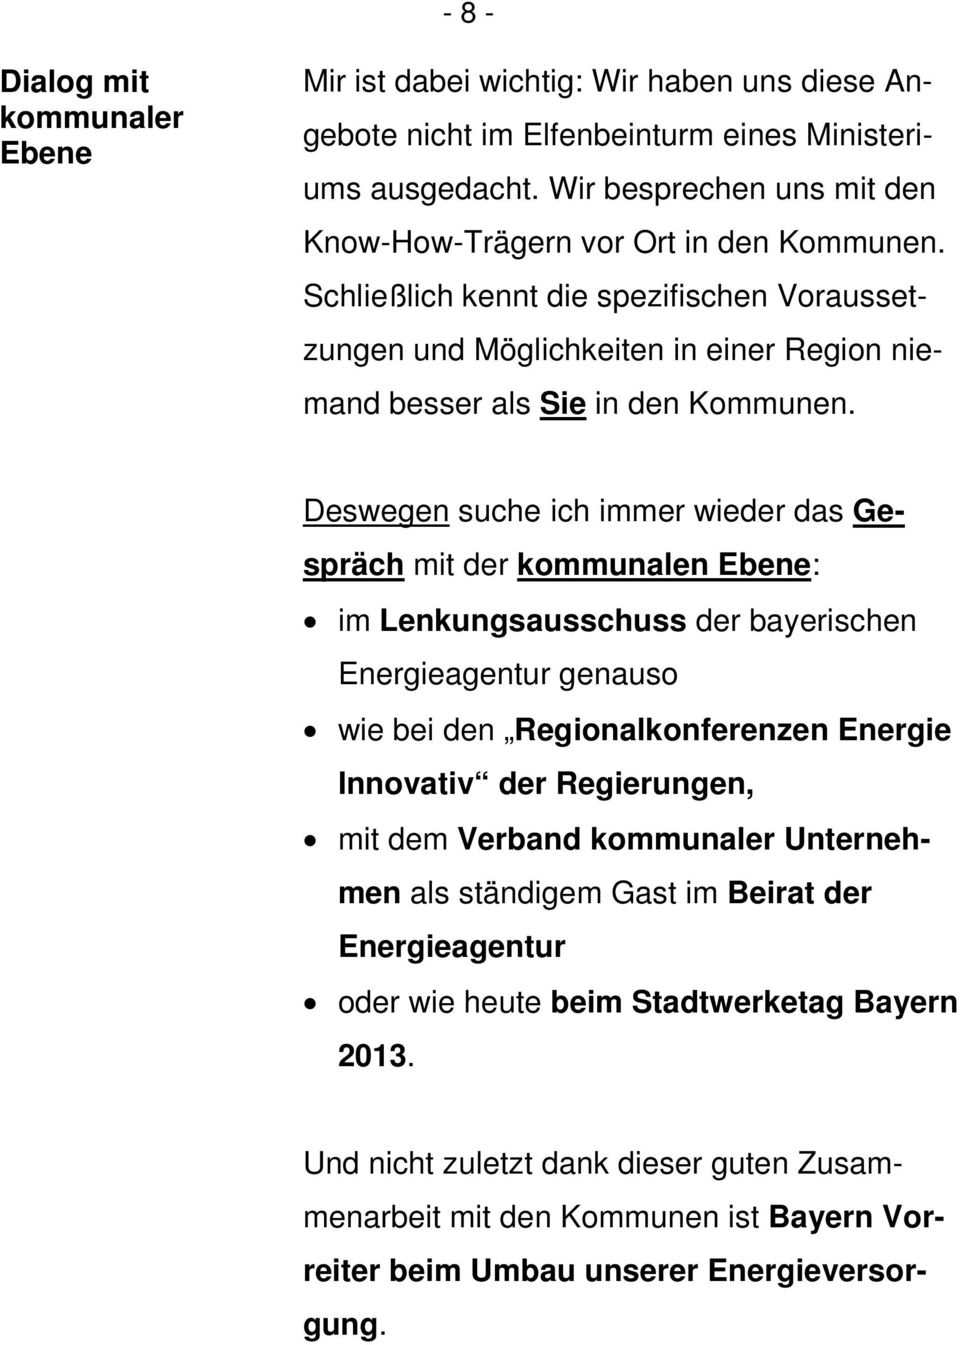 Deswegen suche ich immer wieder das Gespräch mit der kommunalen Ebene: im Lenkungsausschuss der bayerischen Energieagentur genauso wie bei den Regionalkonferenzen Energie Innovativ der Regierungen,